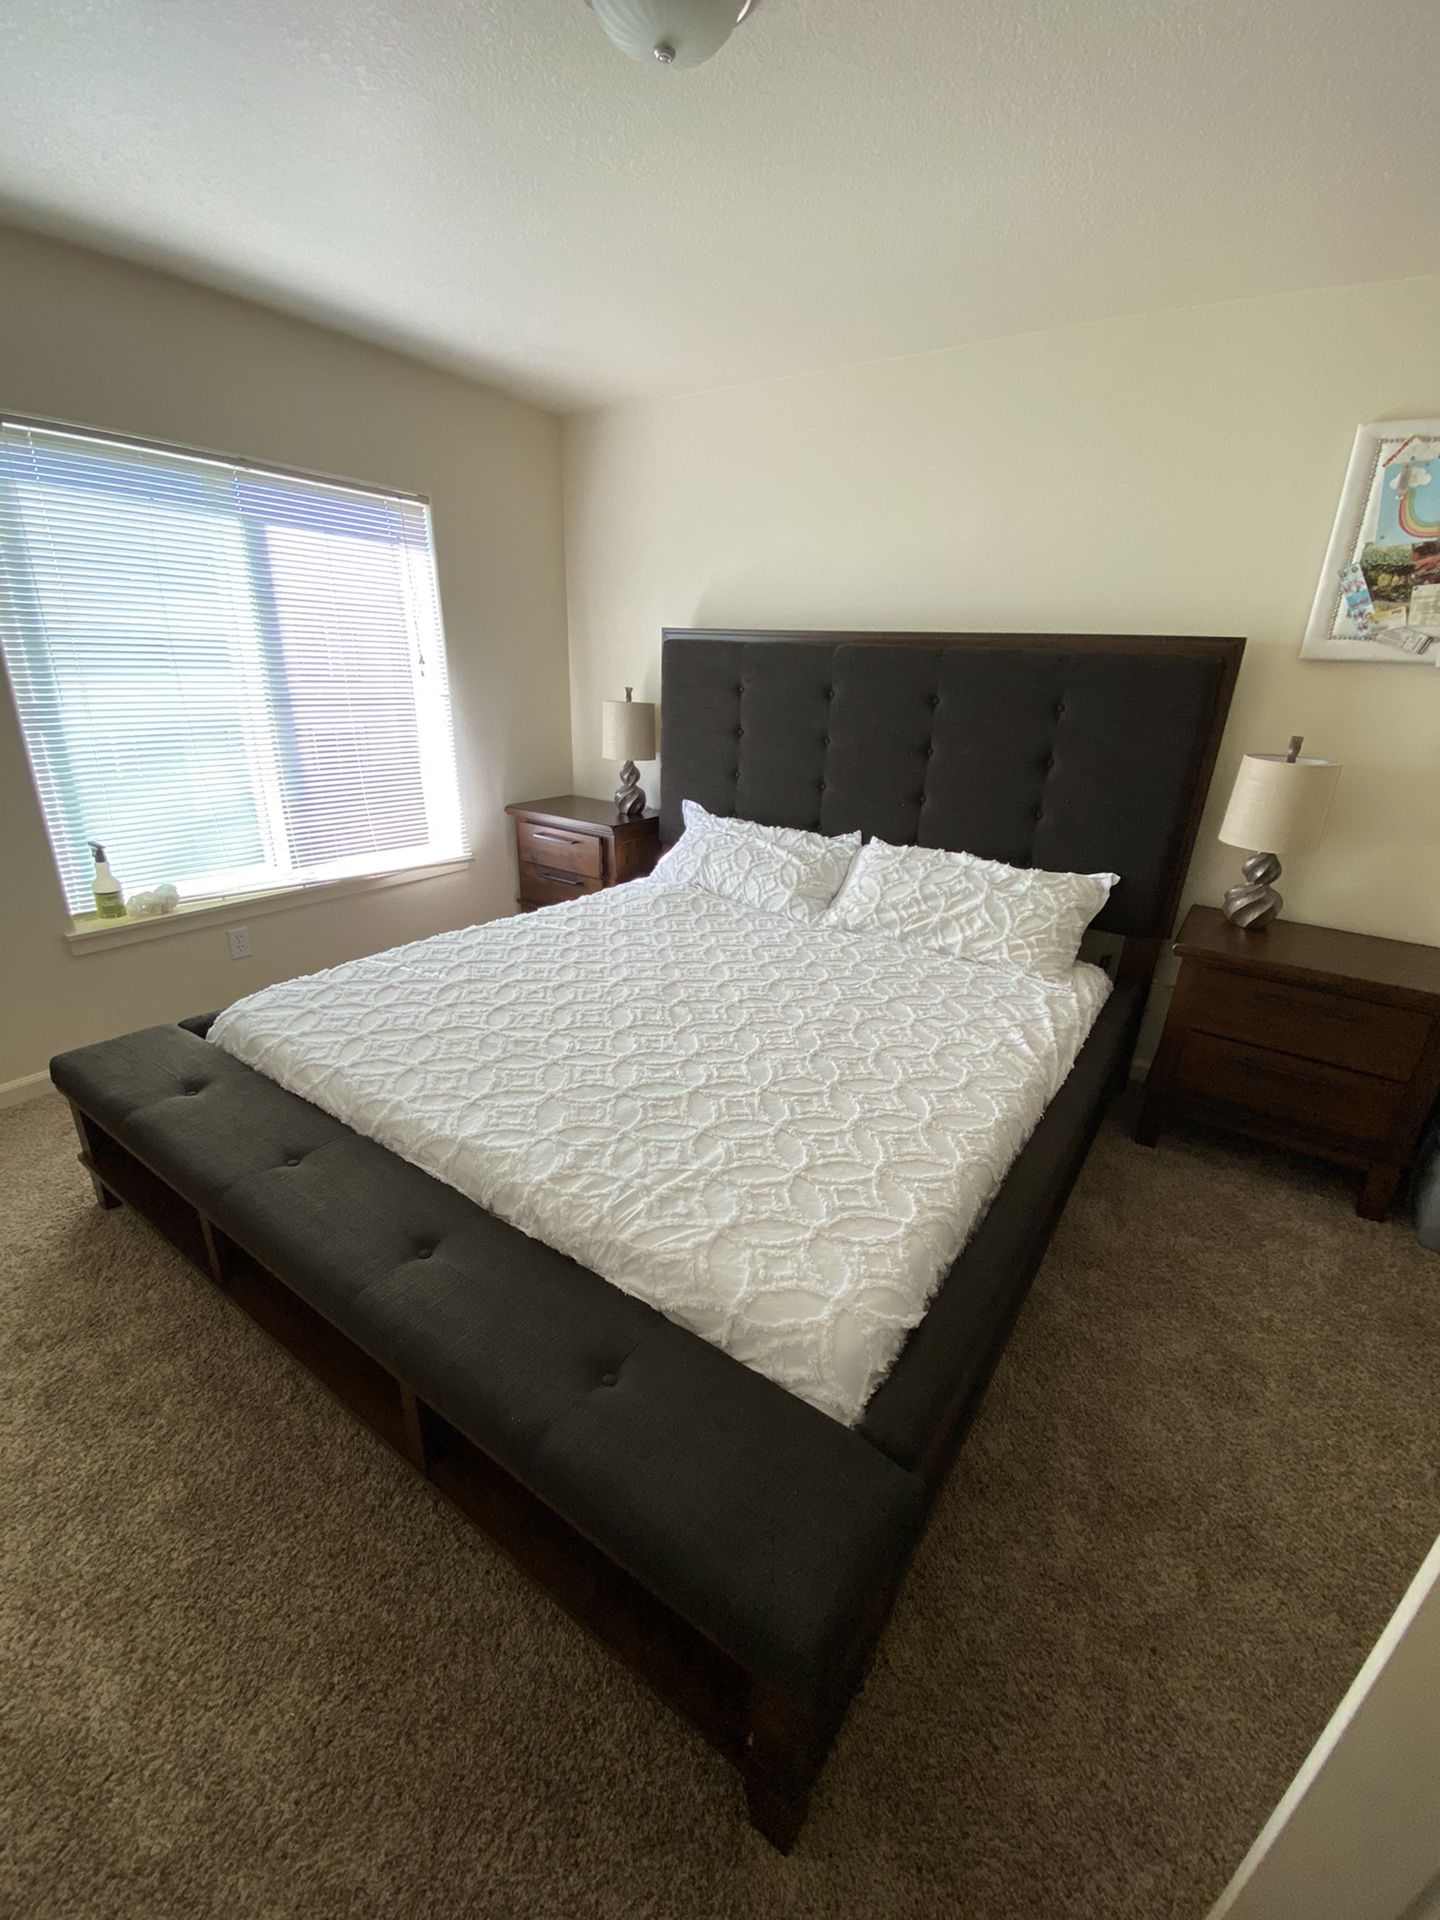 Bedroom bed set